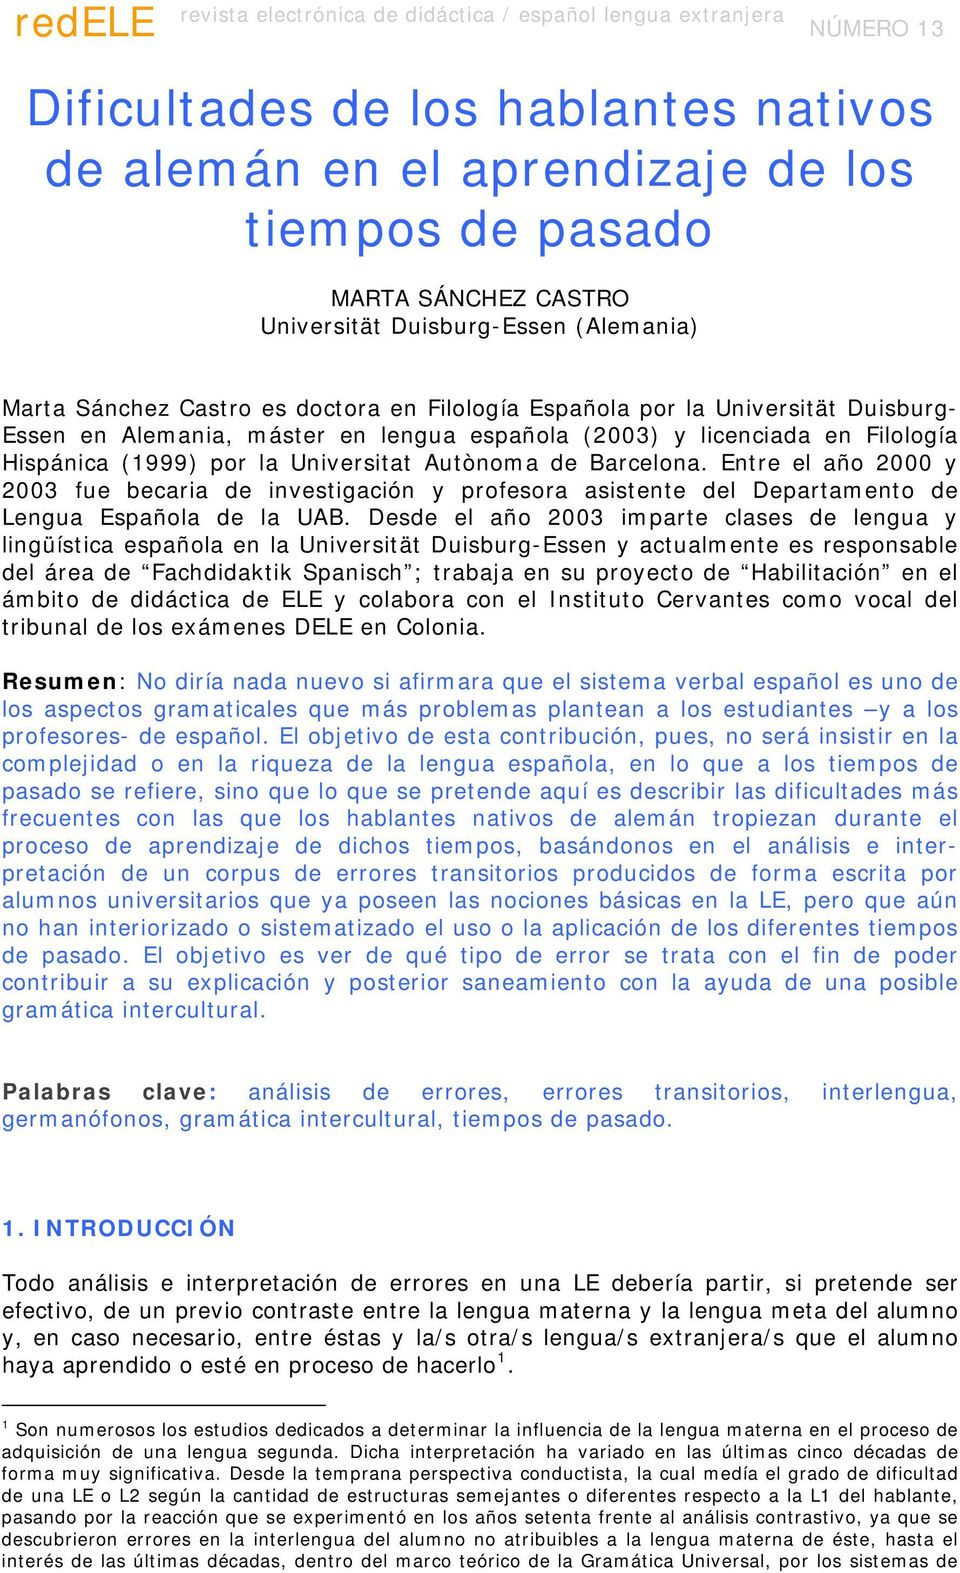 Hispánica (1999) por la Universitat Autònoma de Barcelona. Entre el año 2000 y 2003 fue becaria de investigación y profesora asistente del Departamento de Lengua Española de la UAB.